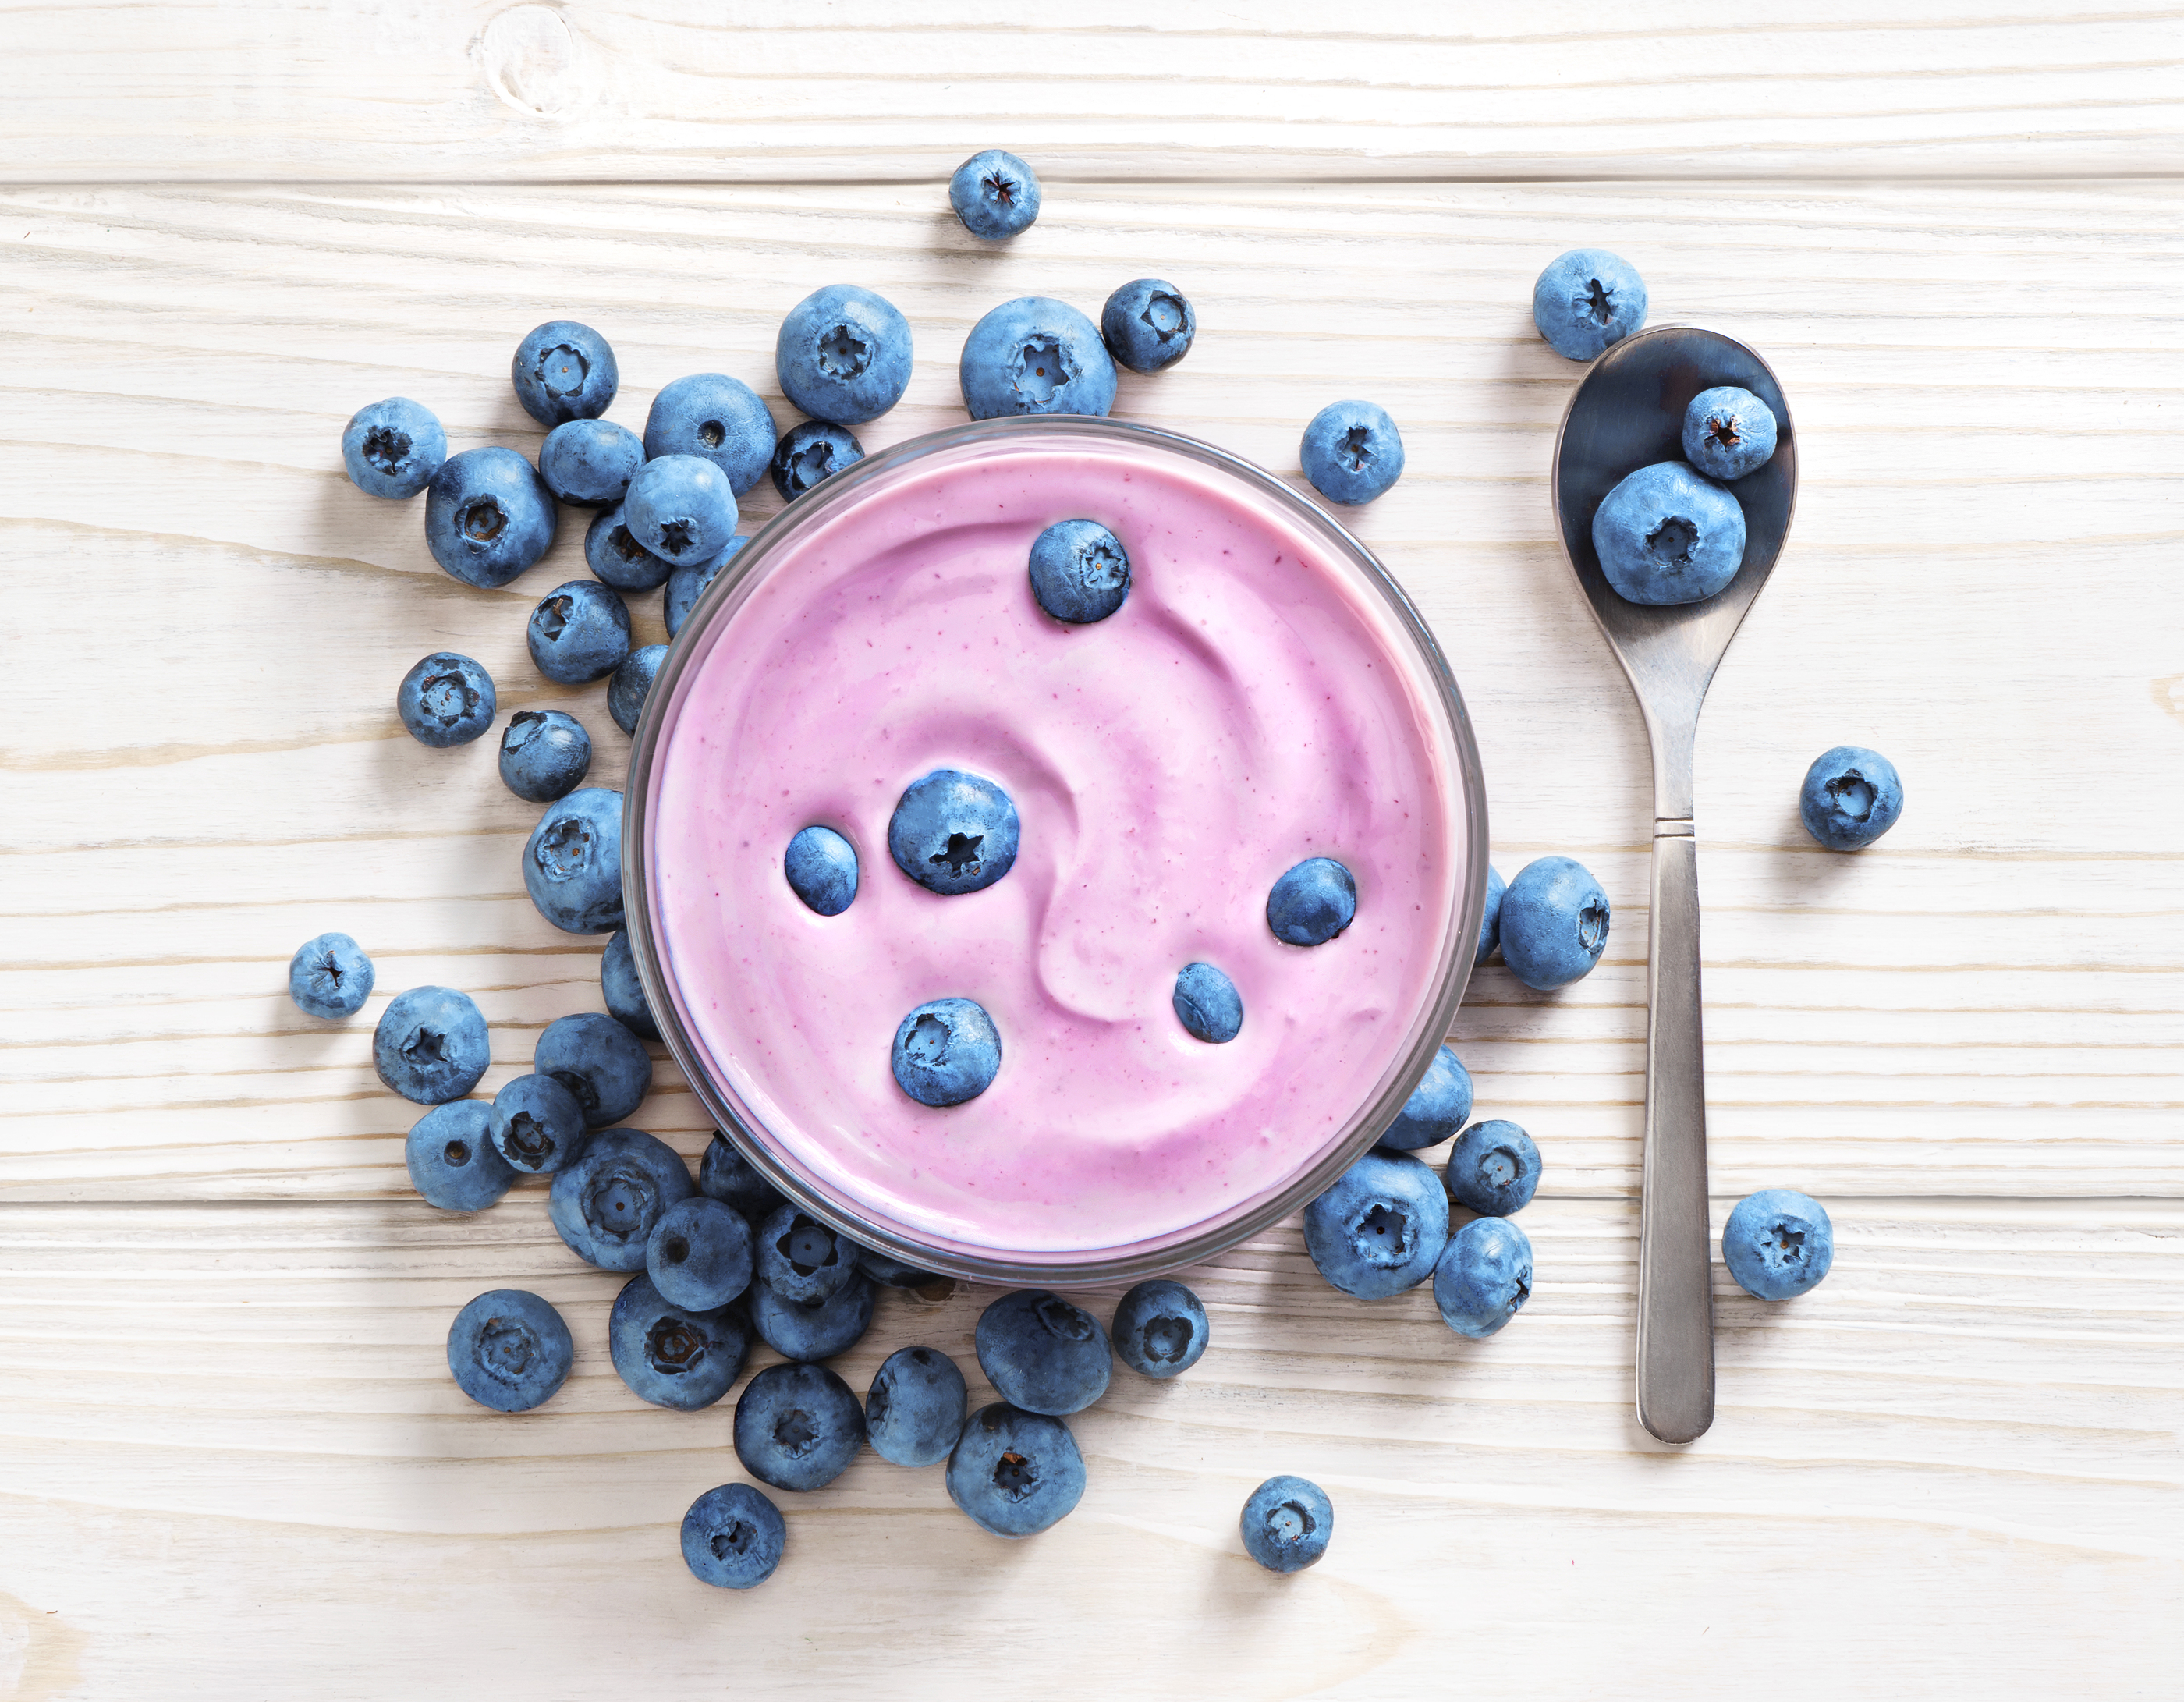 yogurt as probiotic food